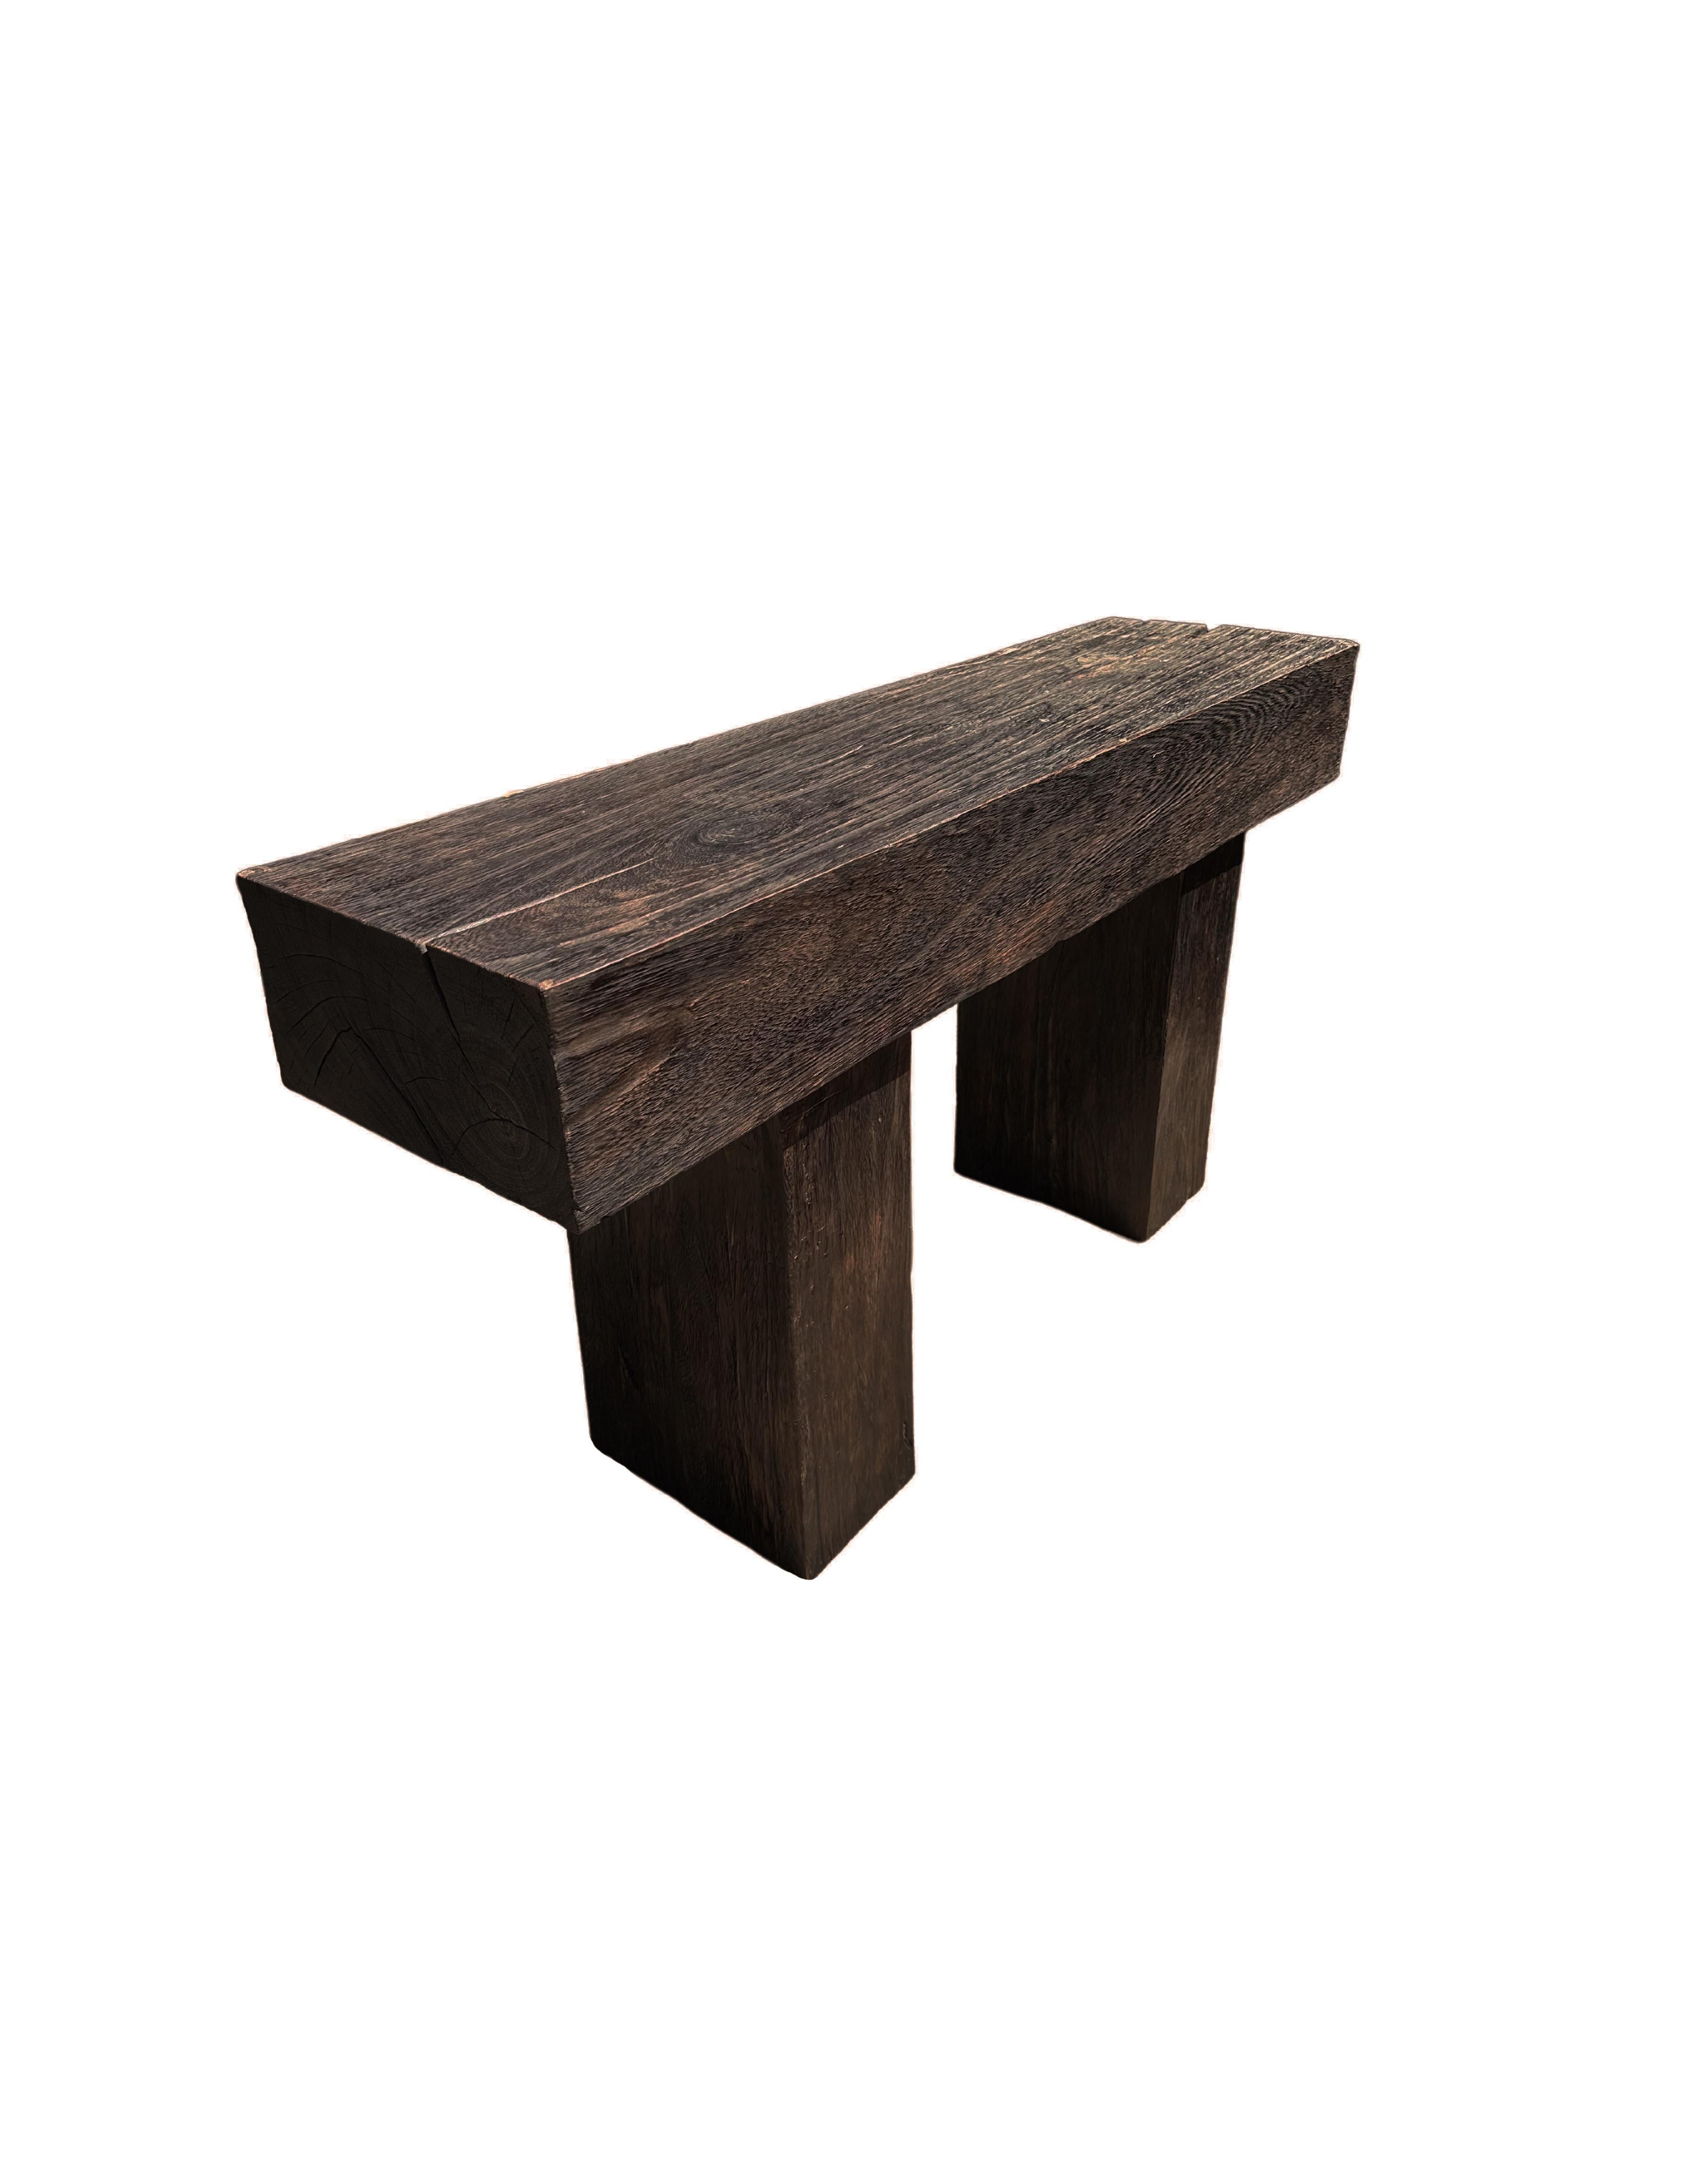 Ein skulpturaler Konsolentisch aus Mangoholz, der aus massivem Mangoholz gefertigt ist. Die Tischplatte ruht auf zwei massiven,  Beine. Ein herrlich minimalistisches Objekt. Die subtilen Holzstrukturen auf allen Seiten tragen zu seinem Charme bei.